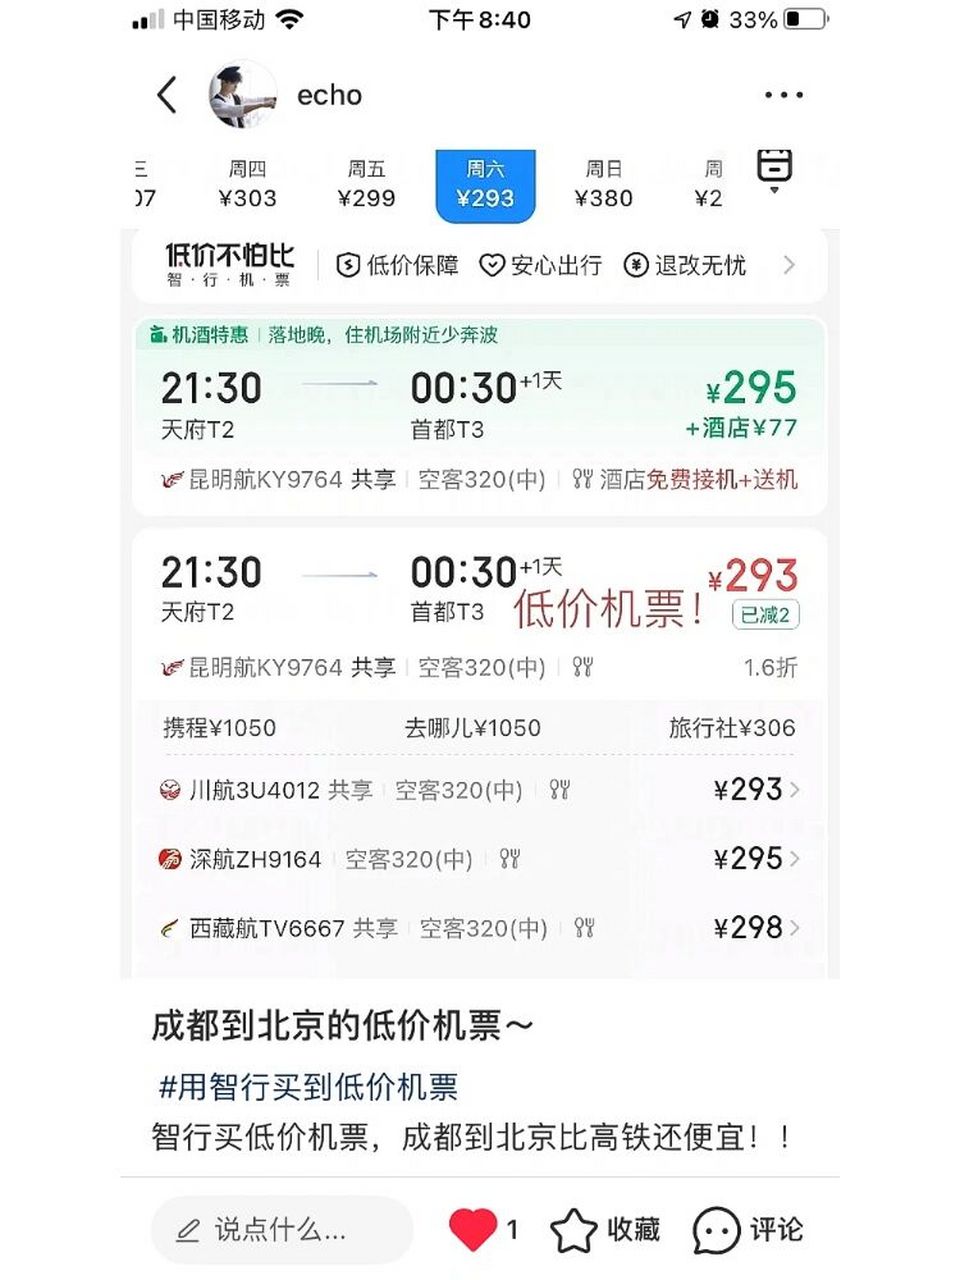 买成都到北京的低价机票   用智行薅机票羊毛,成都到北京的机票价仅